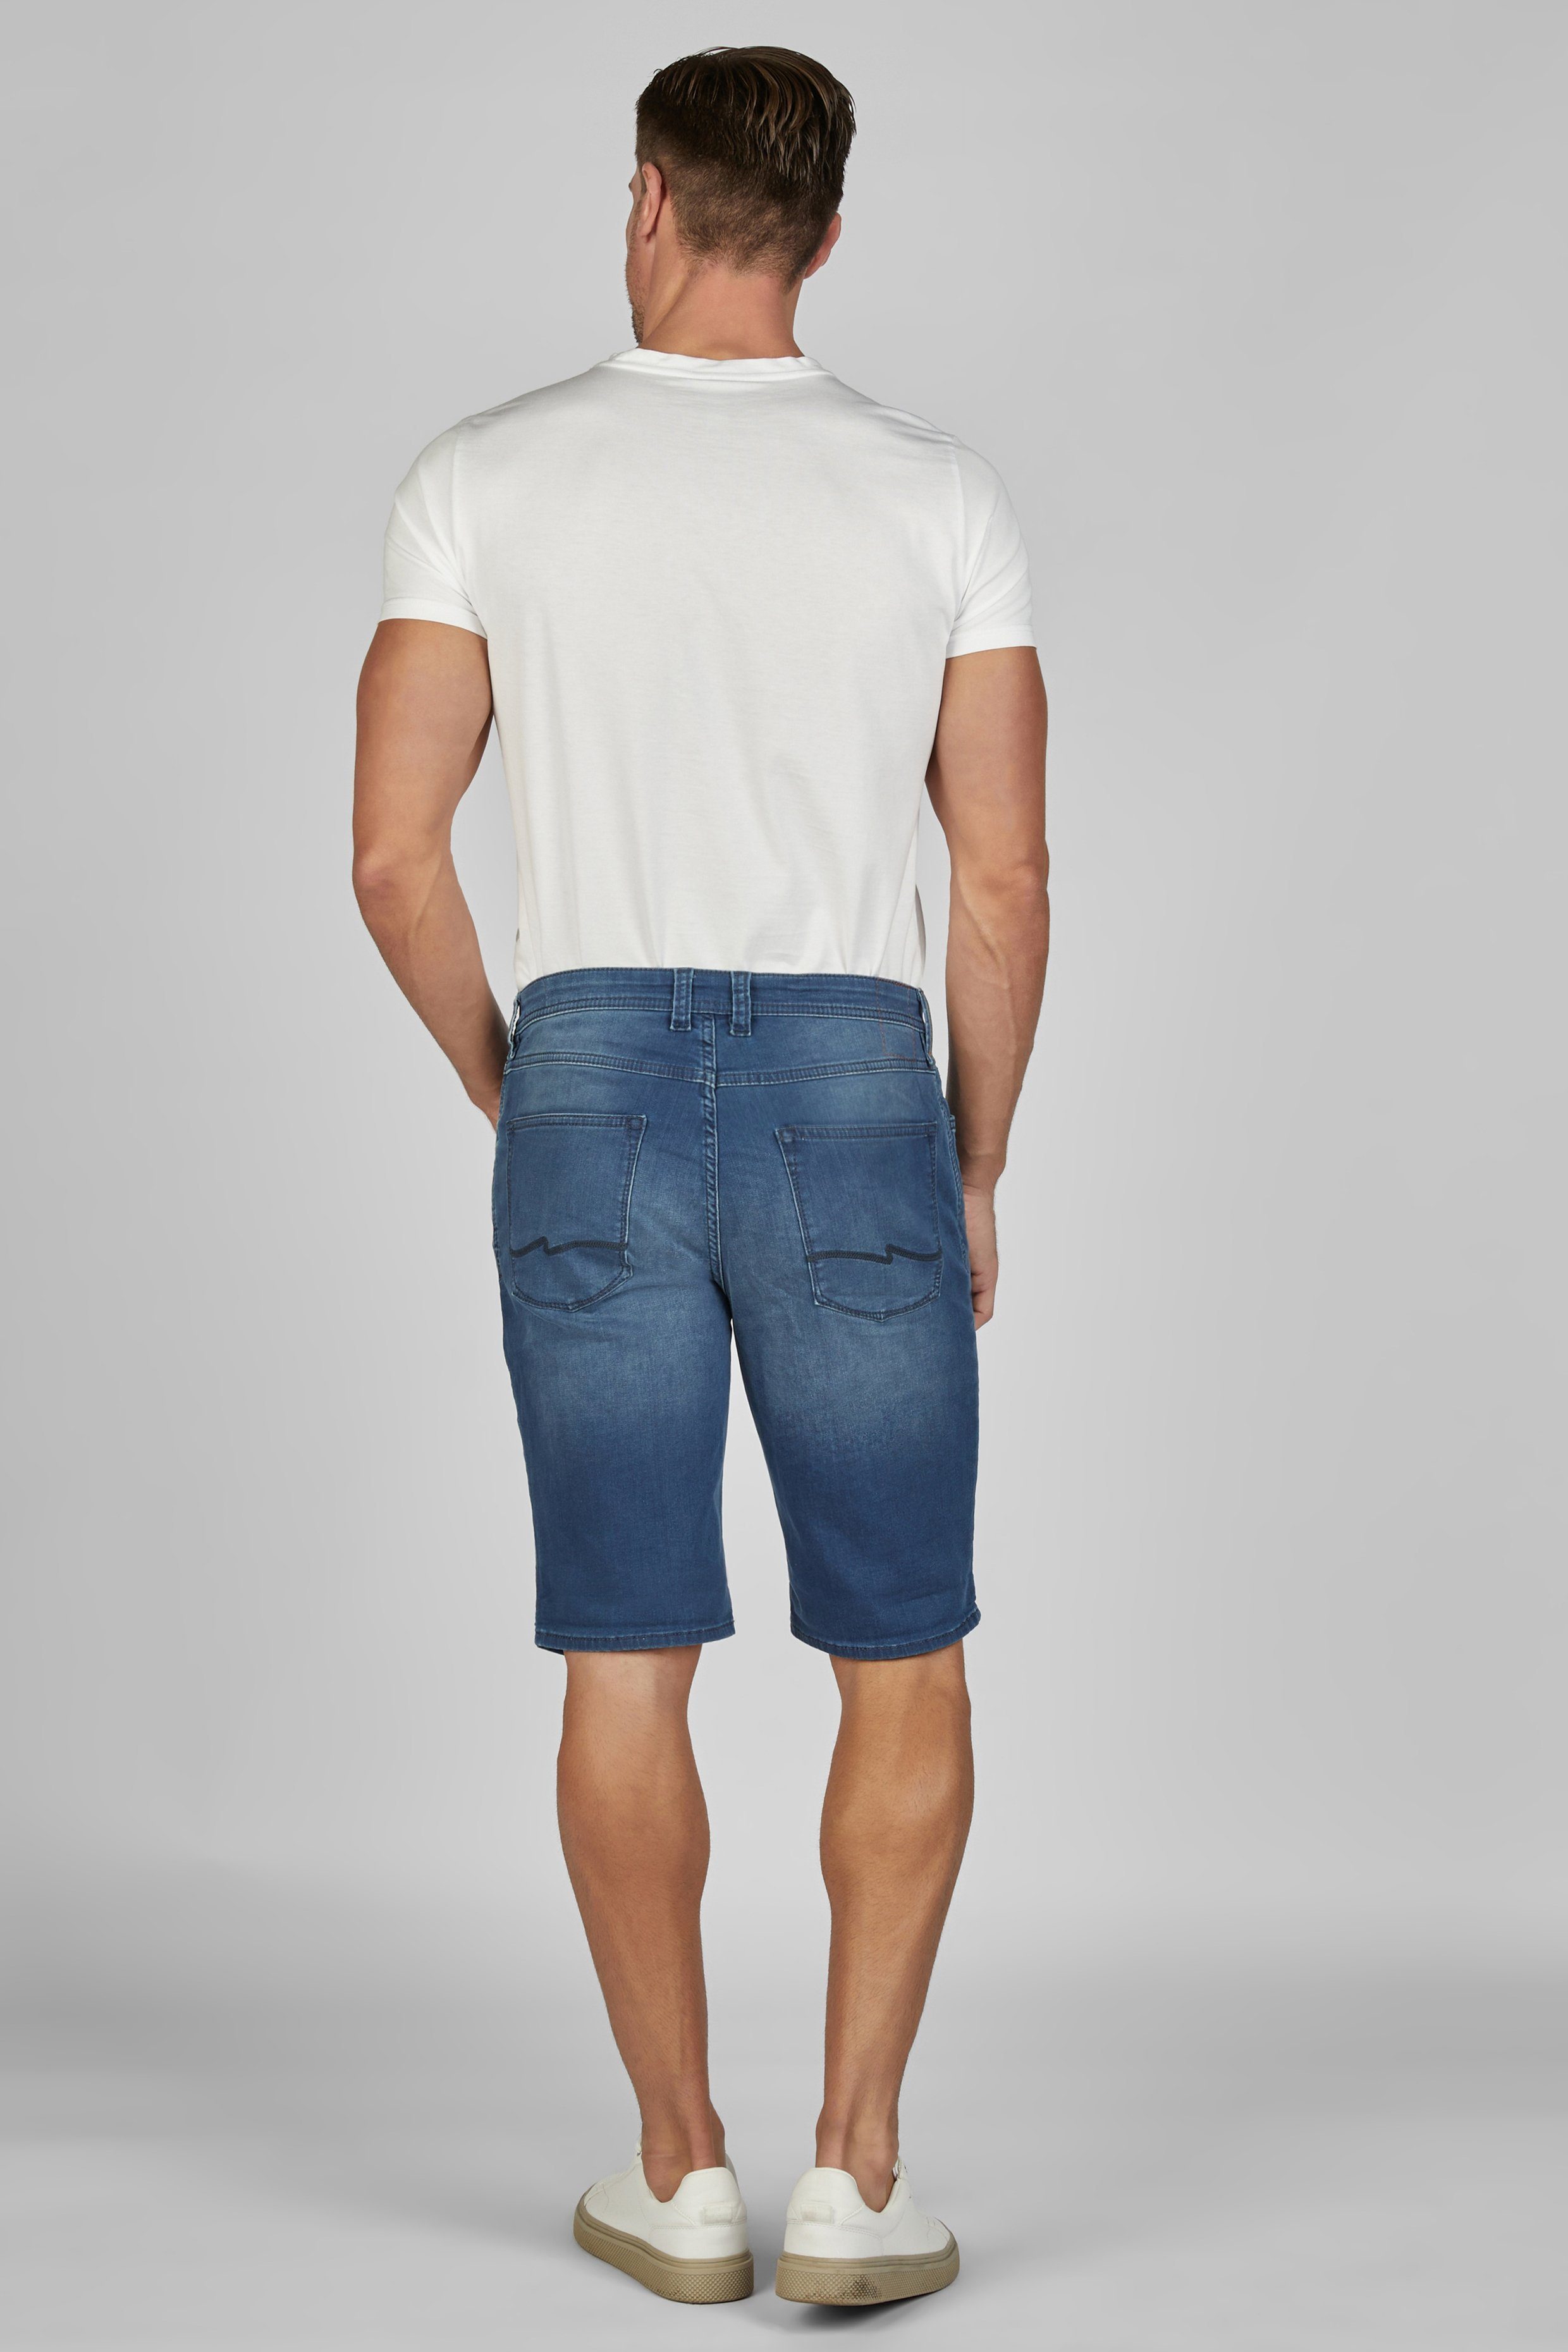 Hattric Bermudas Hattric Mid Jogg-Denim 5-Pocket-Shorts Blue Herren